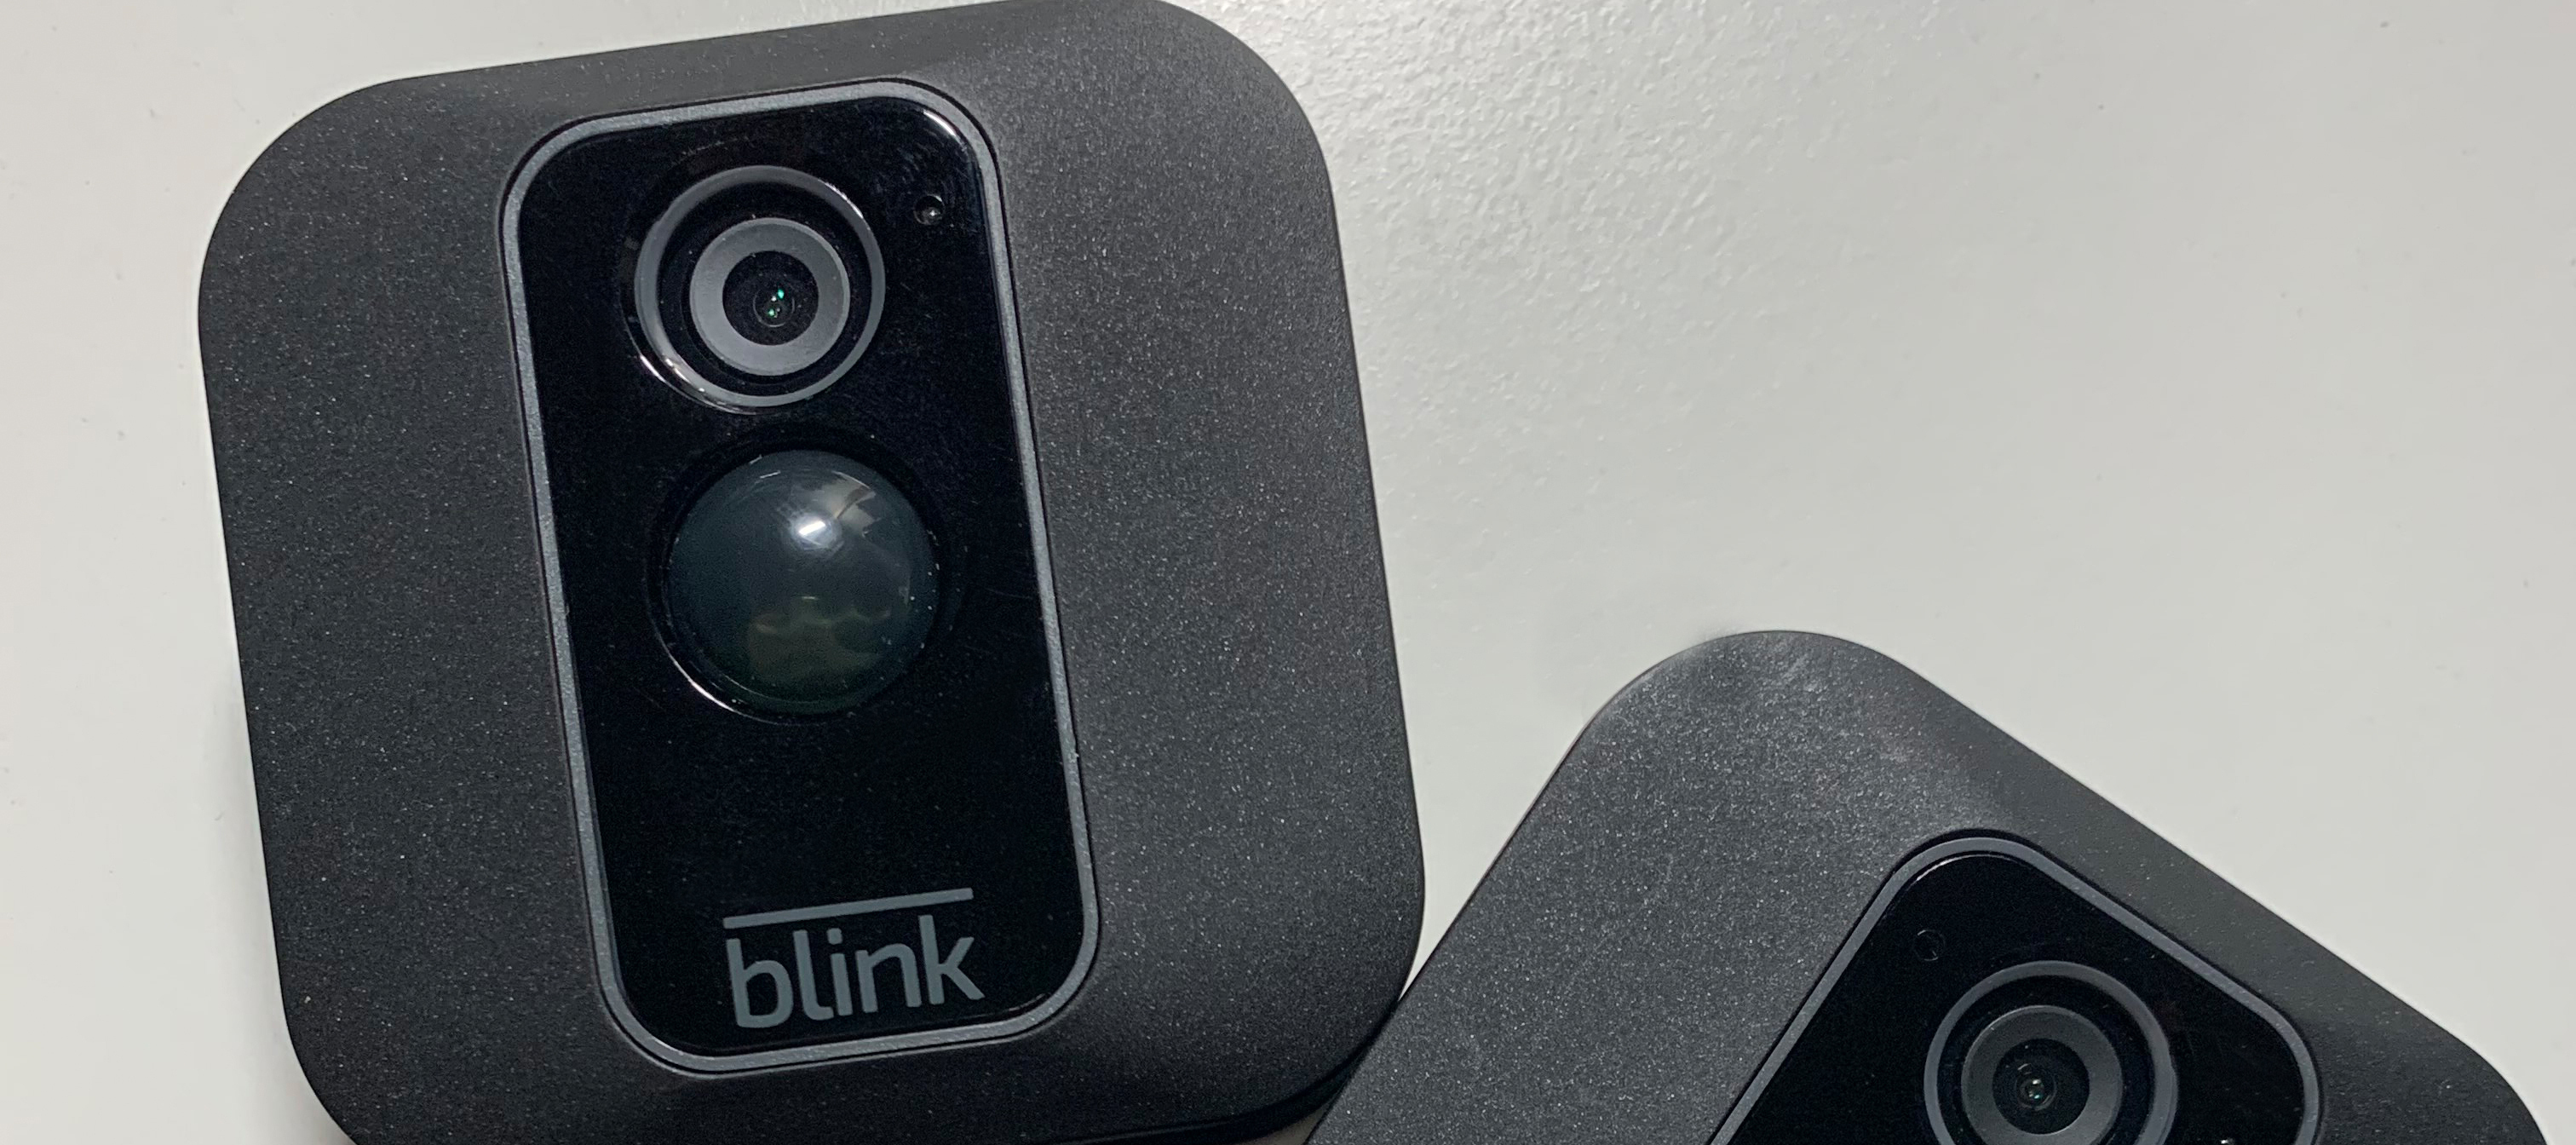 Blink XT2 - Ist mein Haus jetzt sicher?